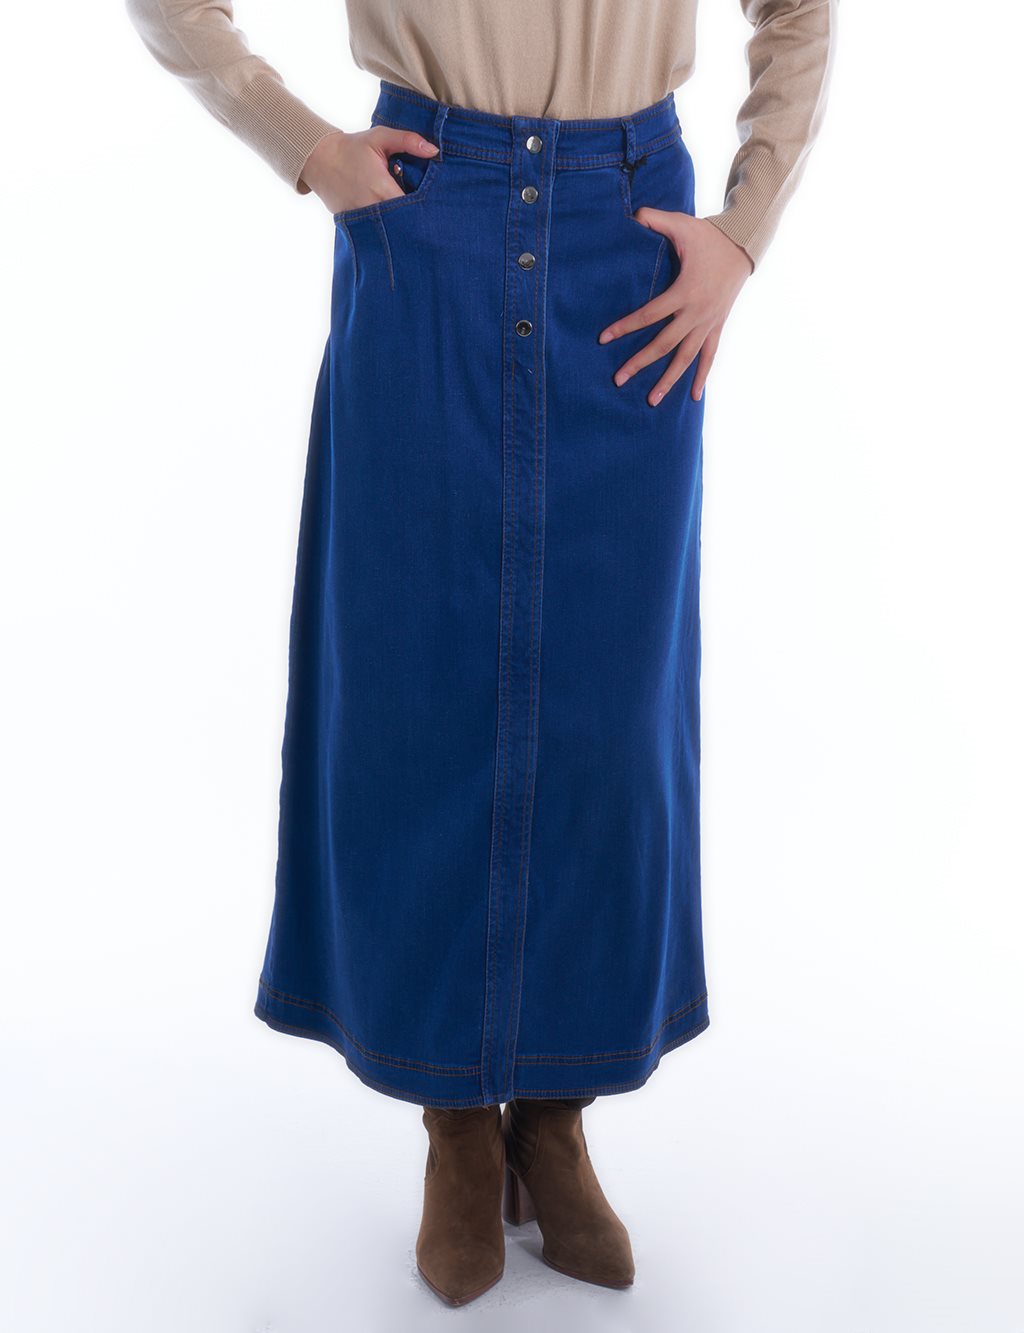  Pocket-Detailed Denim Skirt in Navy Blue